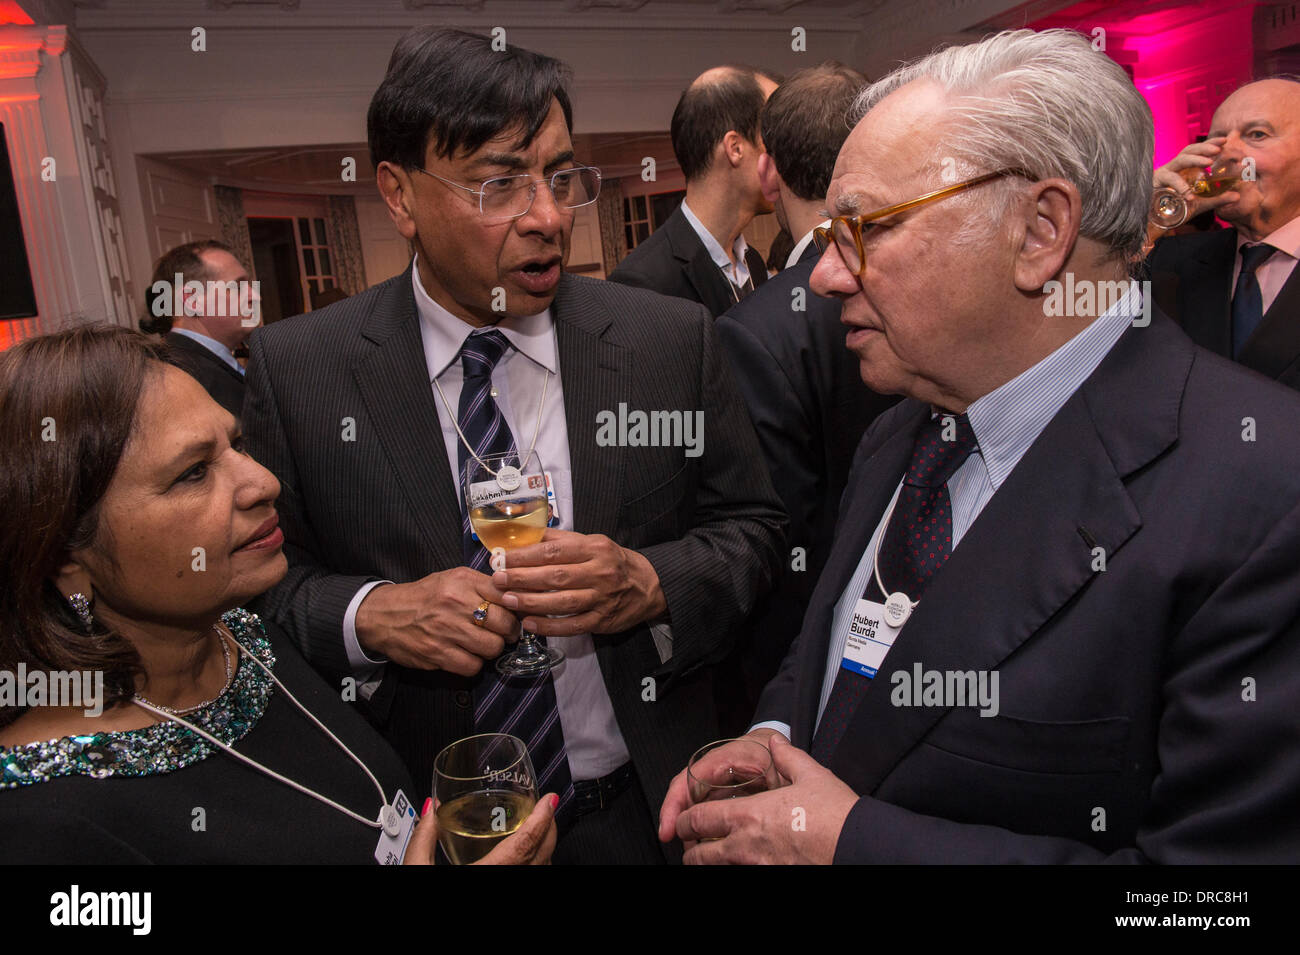 l-R) Usha Und Lakshmi Mittal, Hubert Burda DLD Burda Veranstaltung im  Steigenberger Hotel in Davos während der 44. World Economic Forum (WEF), am  22. Januar 2014 Foto: DPA/Giancarlo Cattaneo Stockfotografie - Alamy